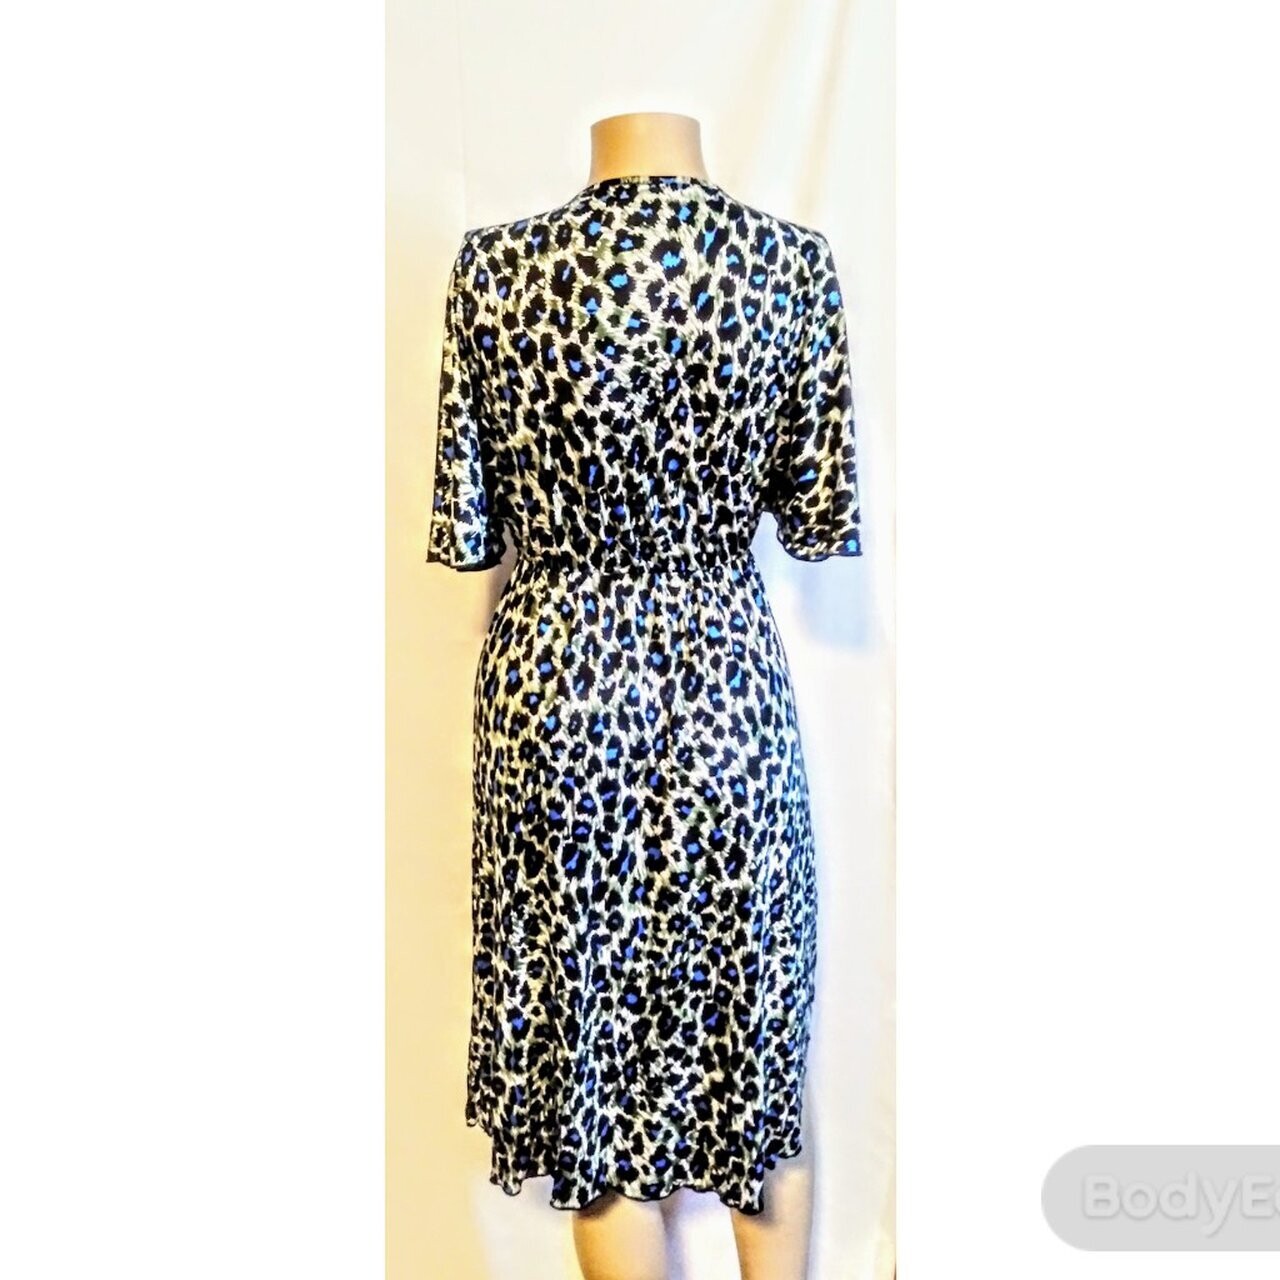 Best sellers Casa Lee Leopard Dress